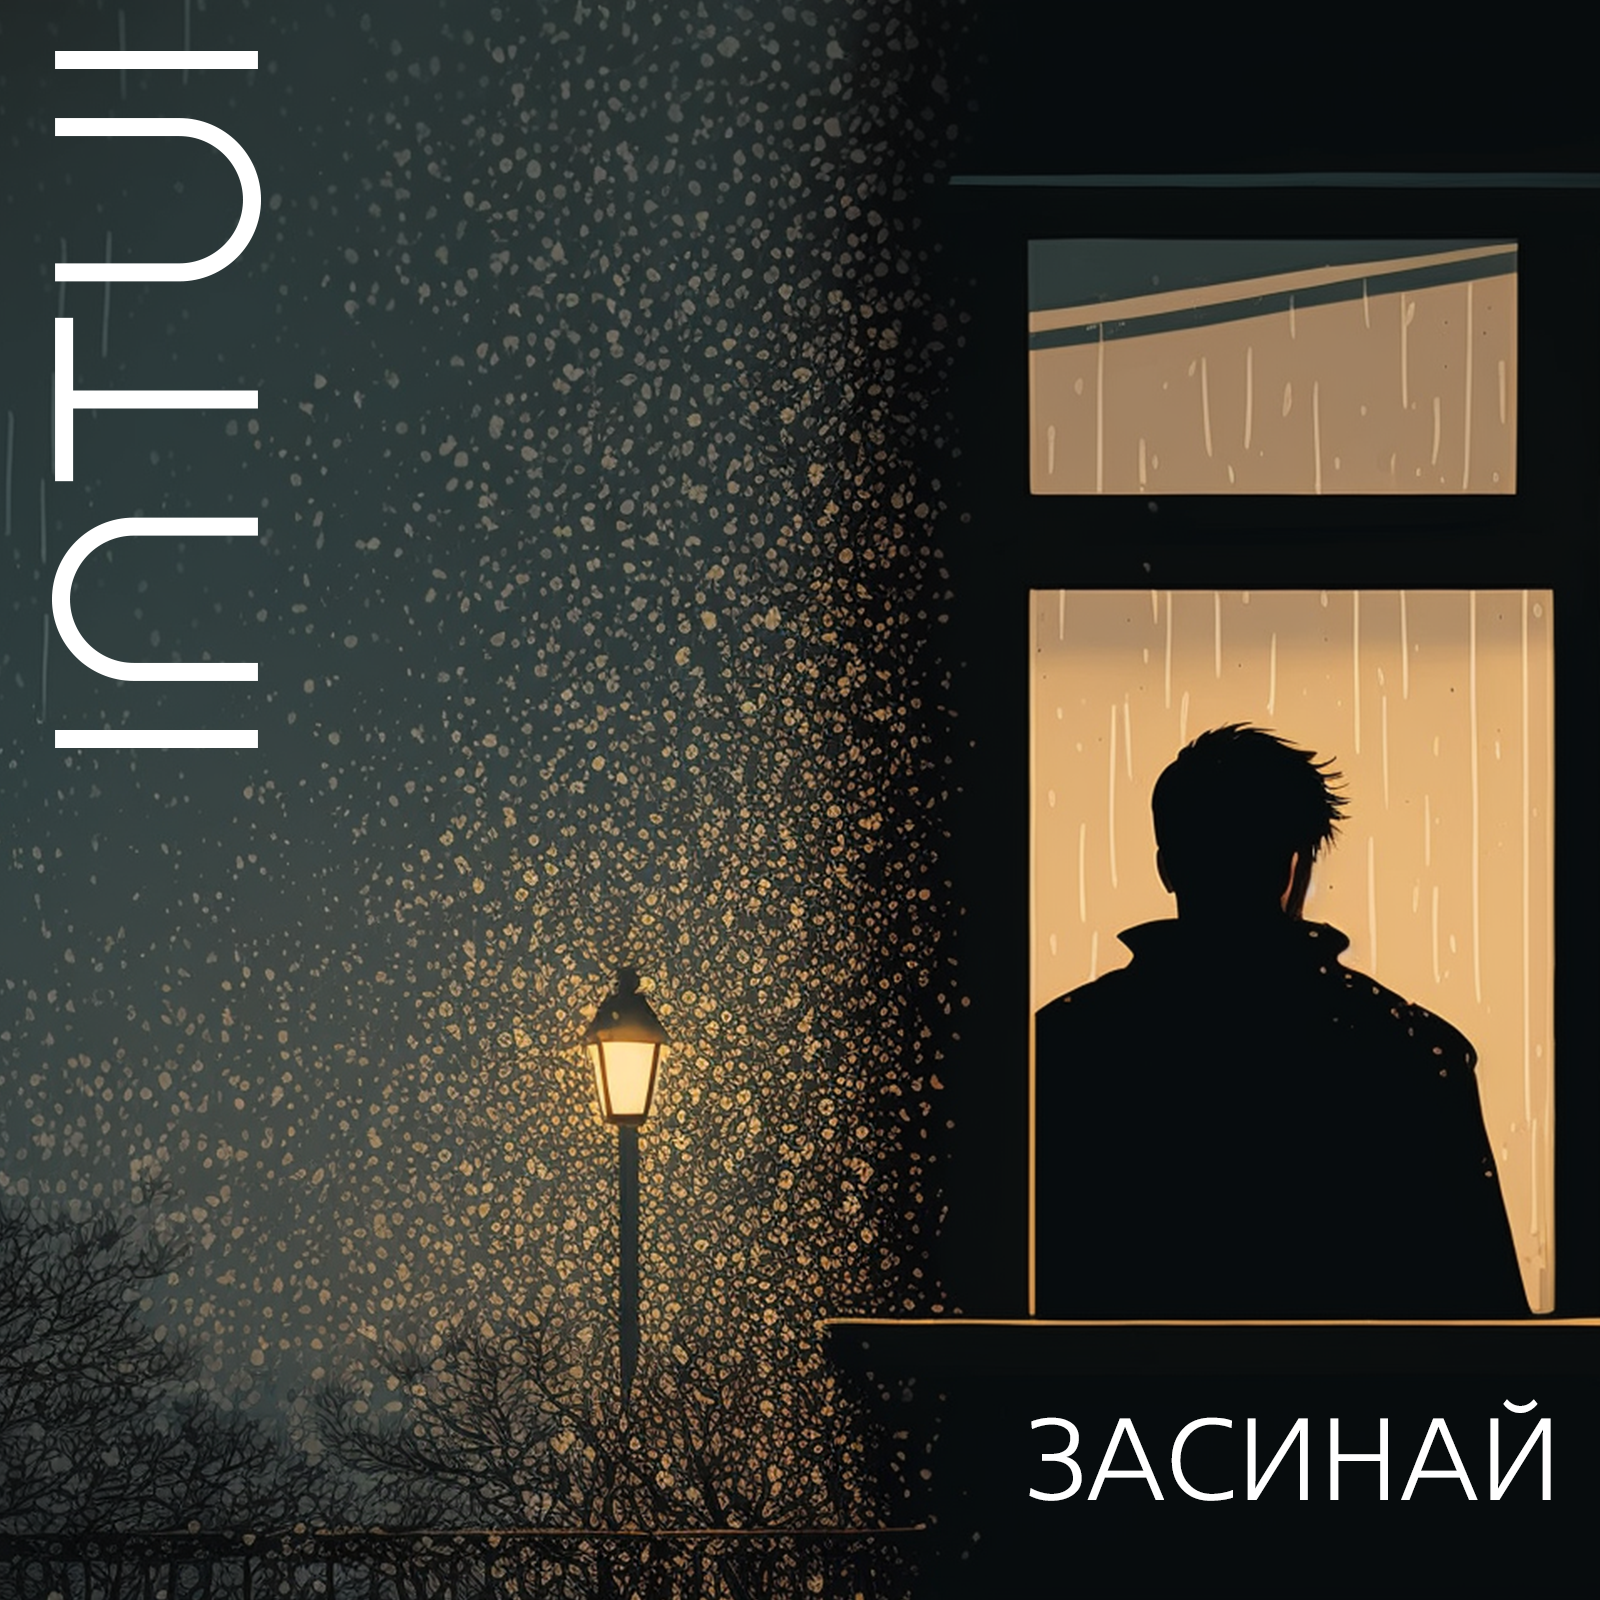 Український гурт INTUI представив свою нову пісню "Засинай" про боротьбу з безсонням під впливом війни.